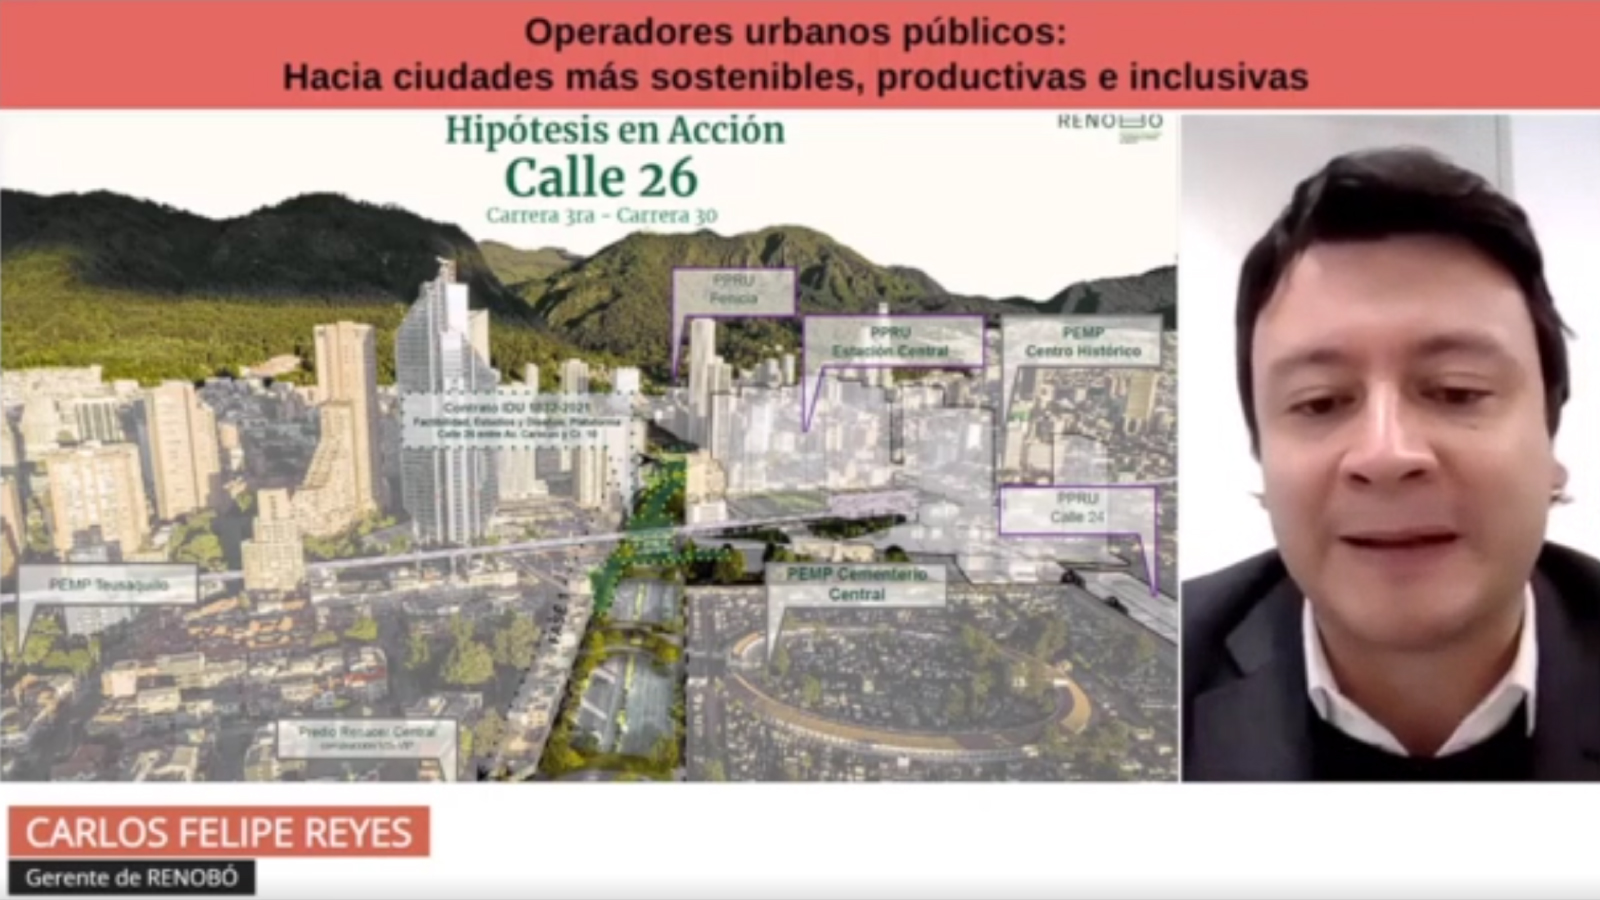 Bogotá expuso ante ciudades de América Latina y el Caribe el rol de RenoBo como operador urbano para alcanzar un desarrollo urbano sostenible e inclusivo